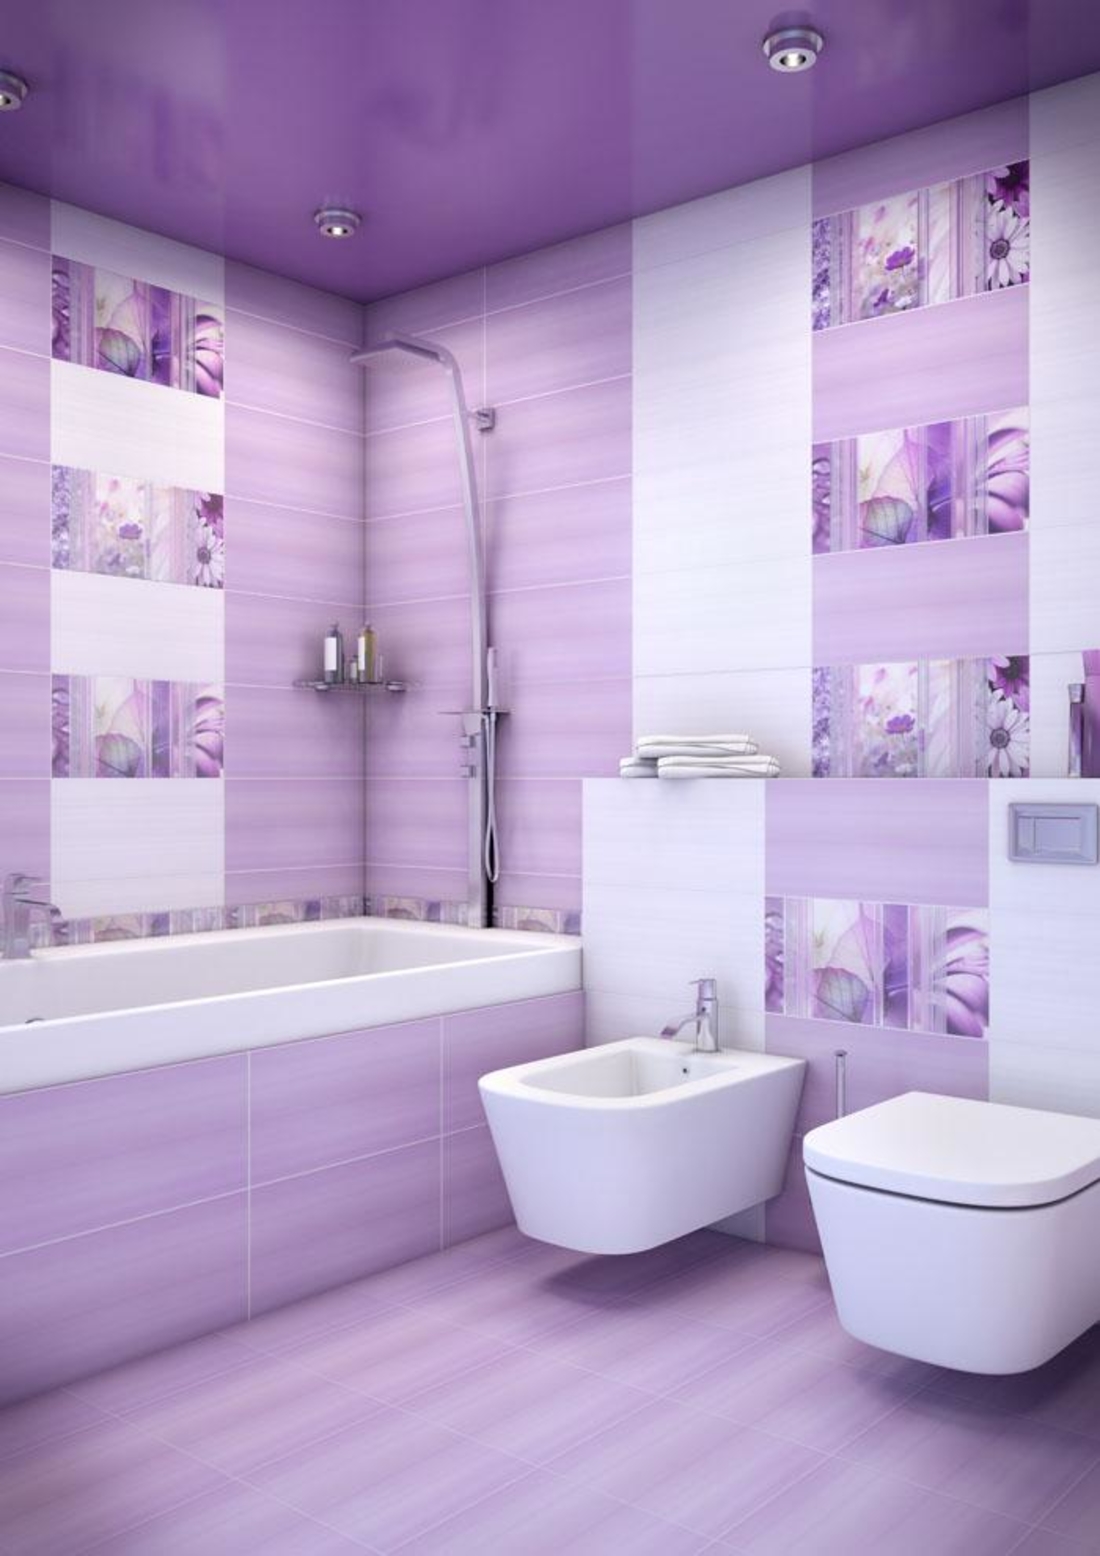 Валберис купить шторы в ванную комнату фото и видеосъемка для маркетплейсов в москве